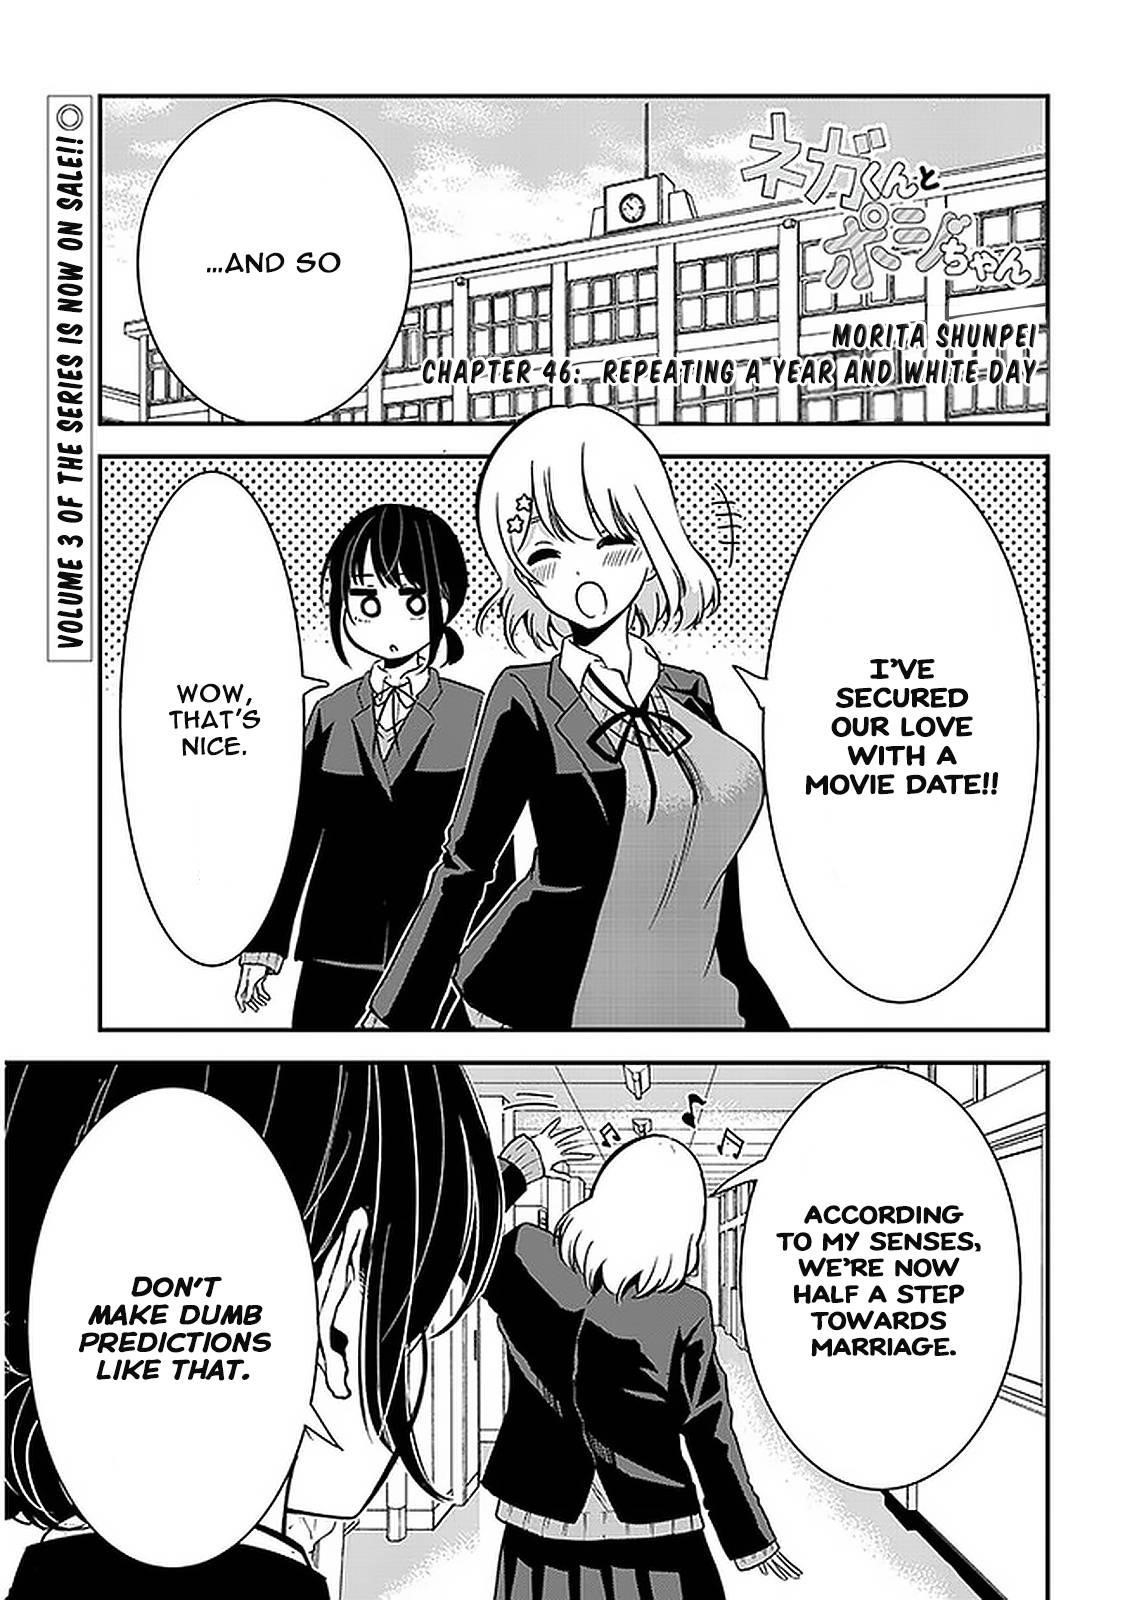 Nega-kun and Posi-chan Chapter 46 - Page 1